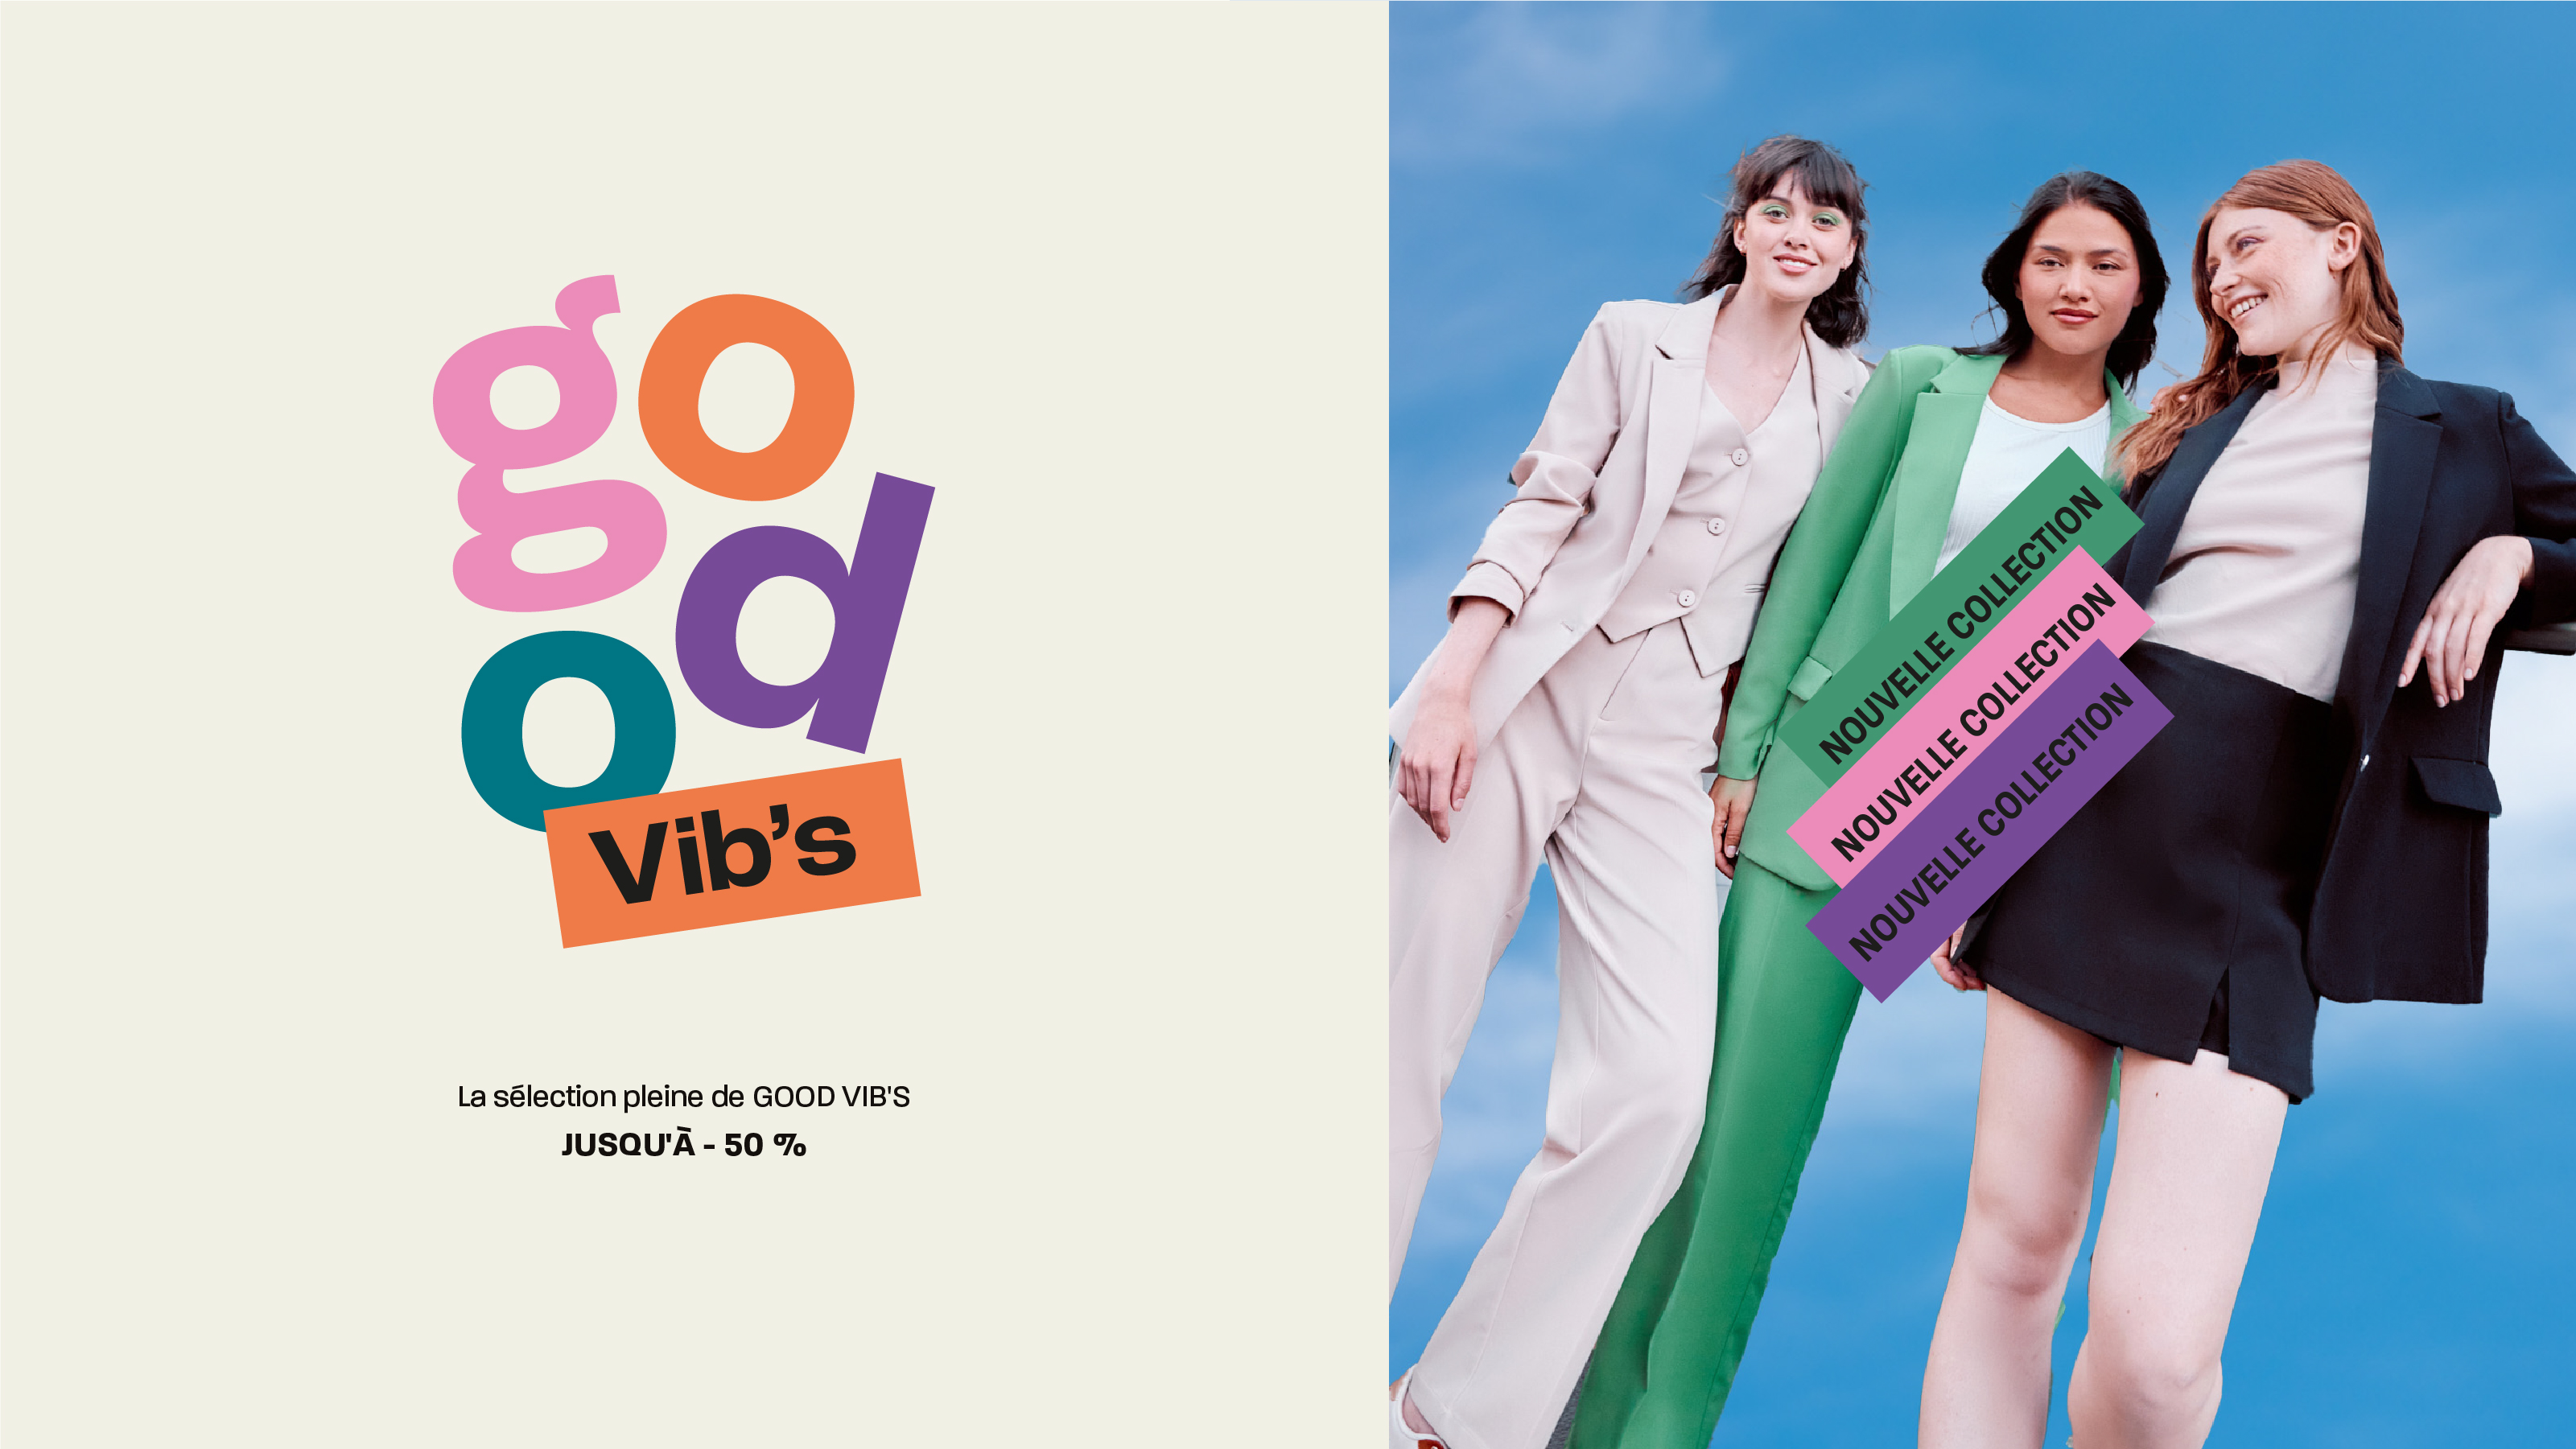 Rebranding Vib's good vib's